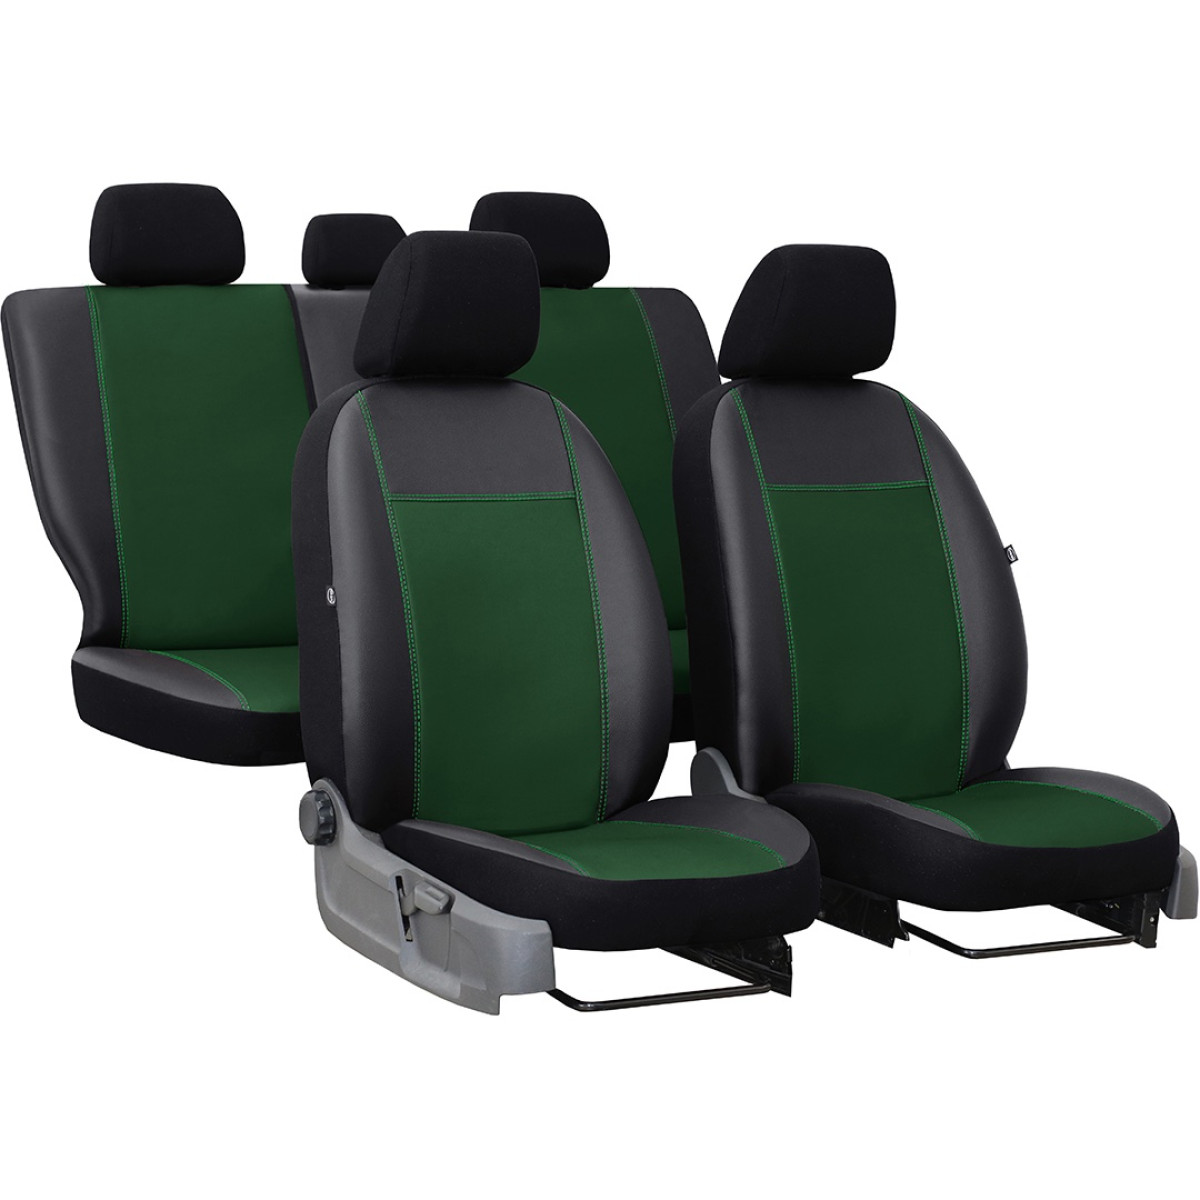 Sitzbezüge Ledersitzbezug Für Toyota Für Yaris Für W205